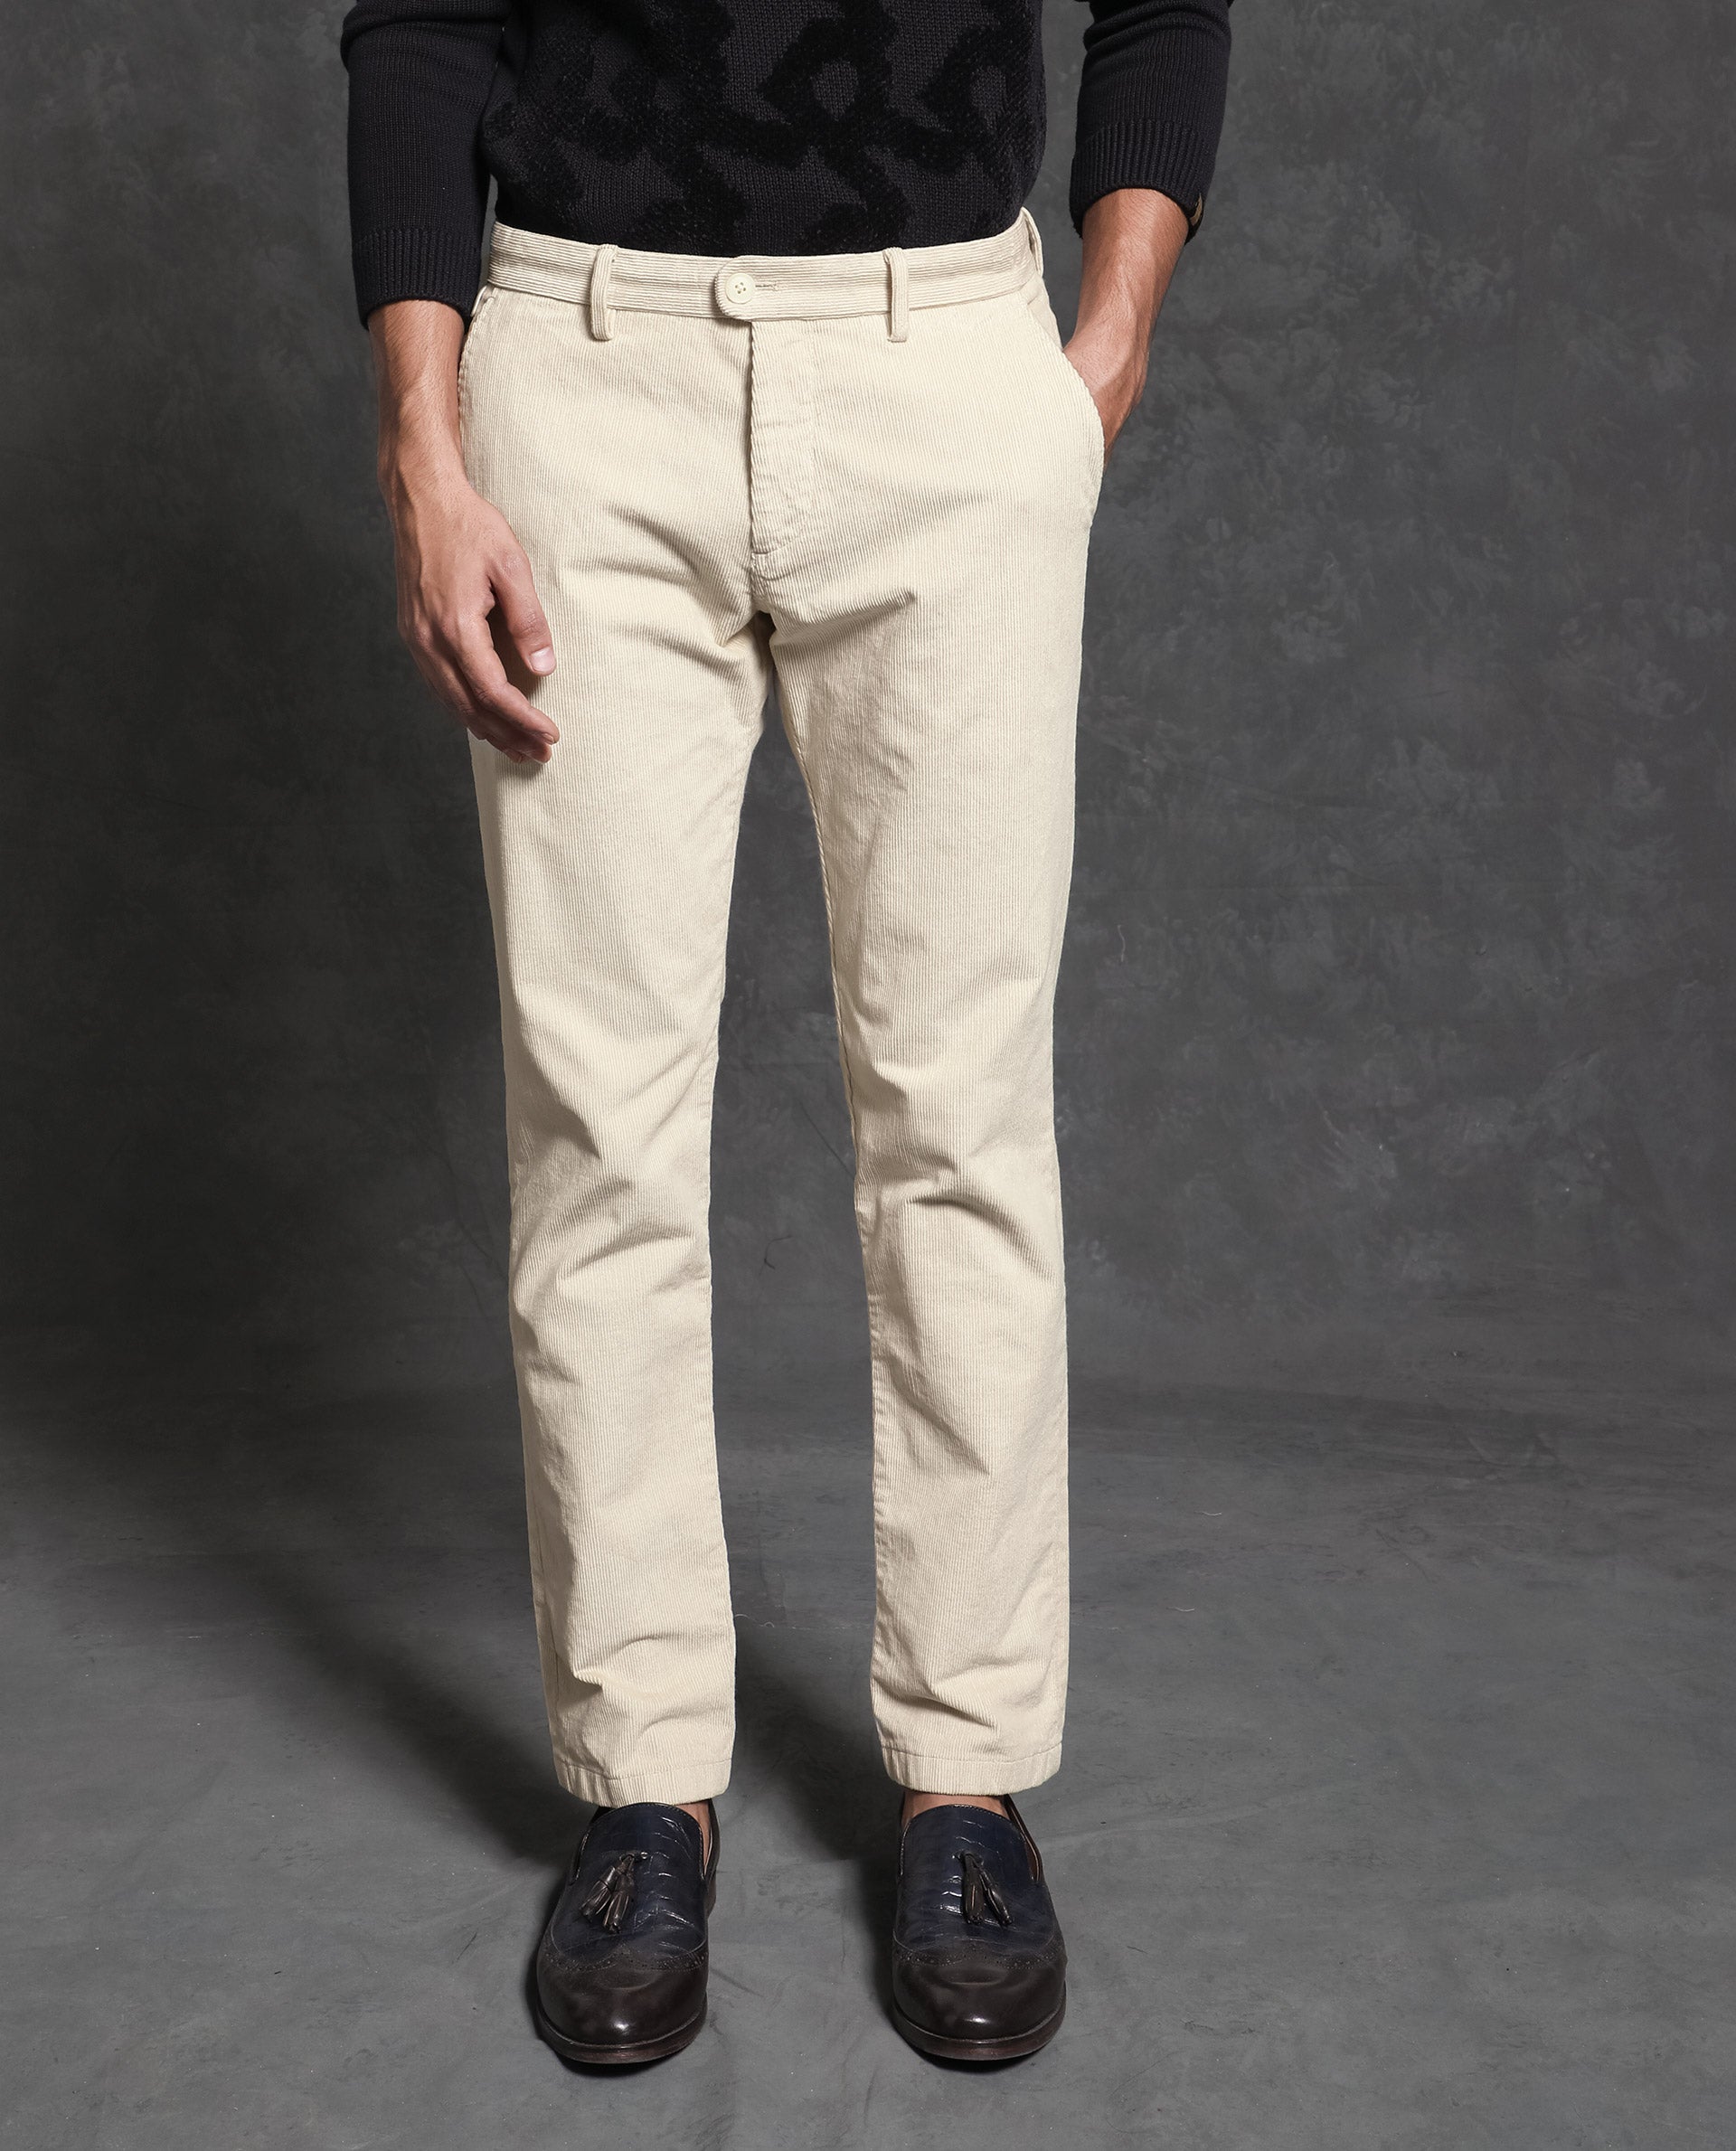 White corduroy trousers 